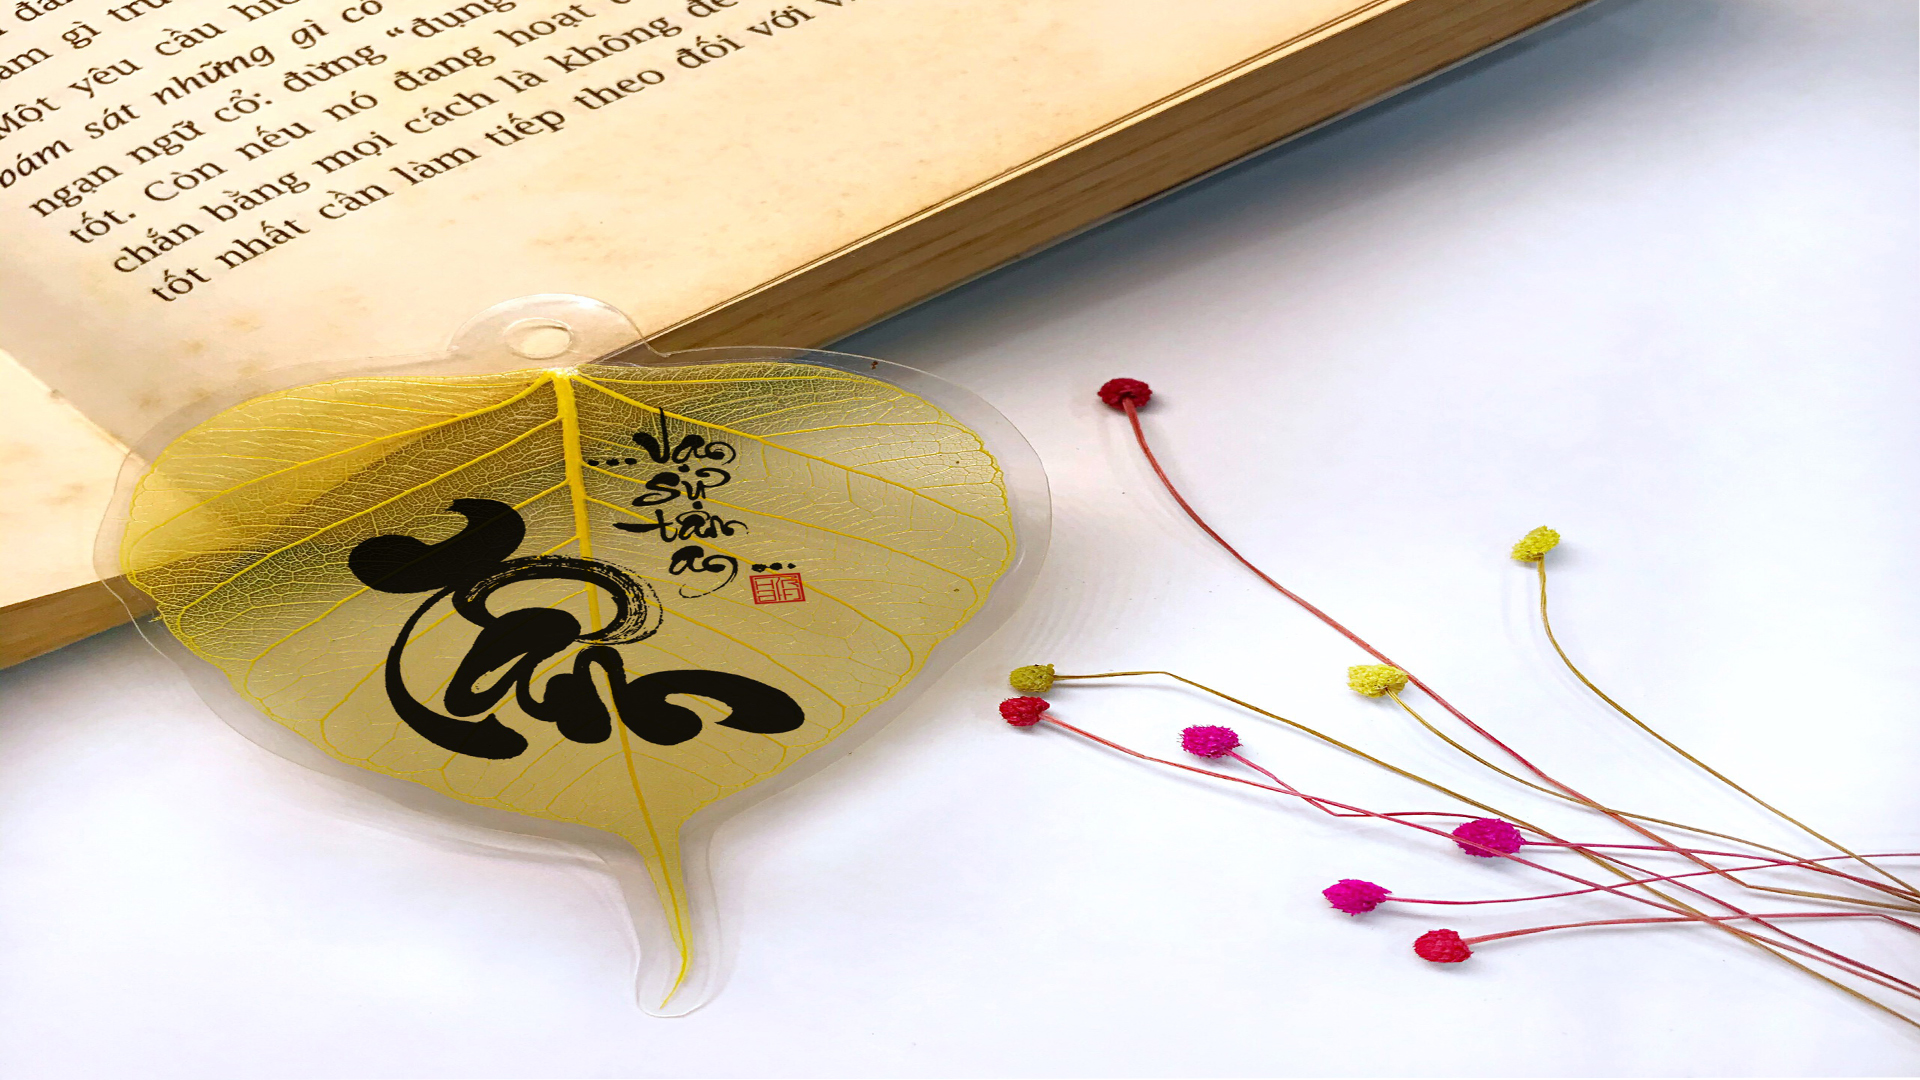 Cách uốn cây sung hình chữ tâm thư pháp  How to bend bonsai accrding to  Vietnamese calligrapphy  YouTube